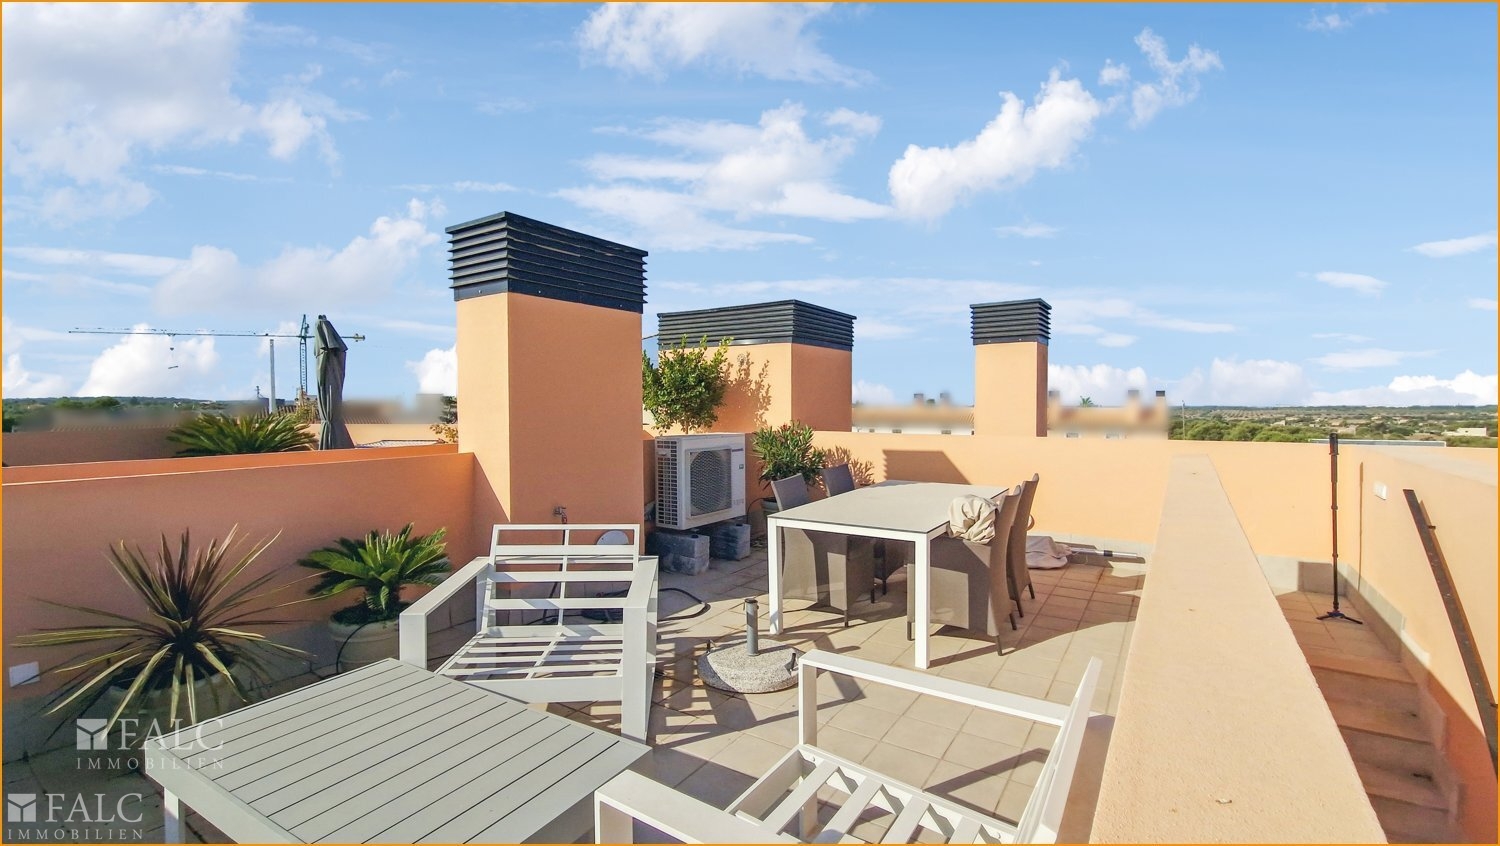 Dachterrasse/azotea/roof terrace